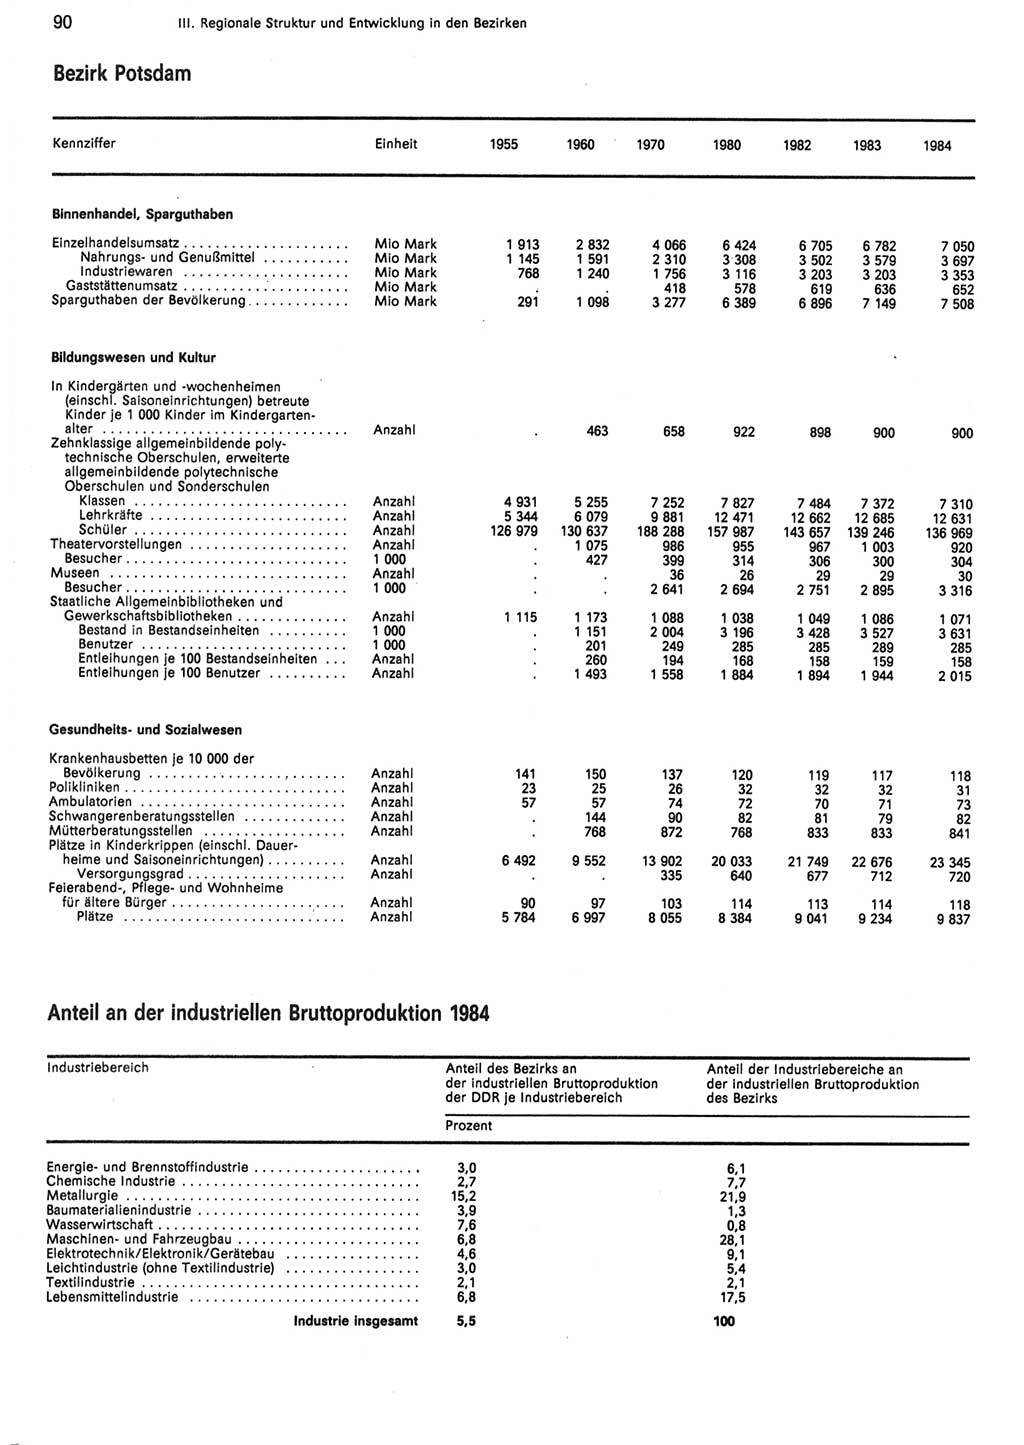 Statistisches Jahrbuch der Deutschen Demokratischen Republik (DDR) 1985, Seite 90 (Stat. Jb. DDR 1985, S. 90)